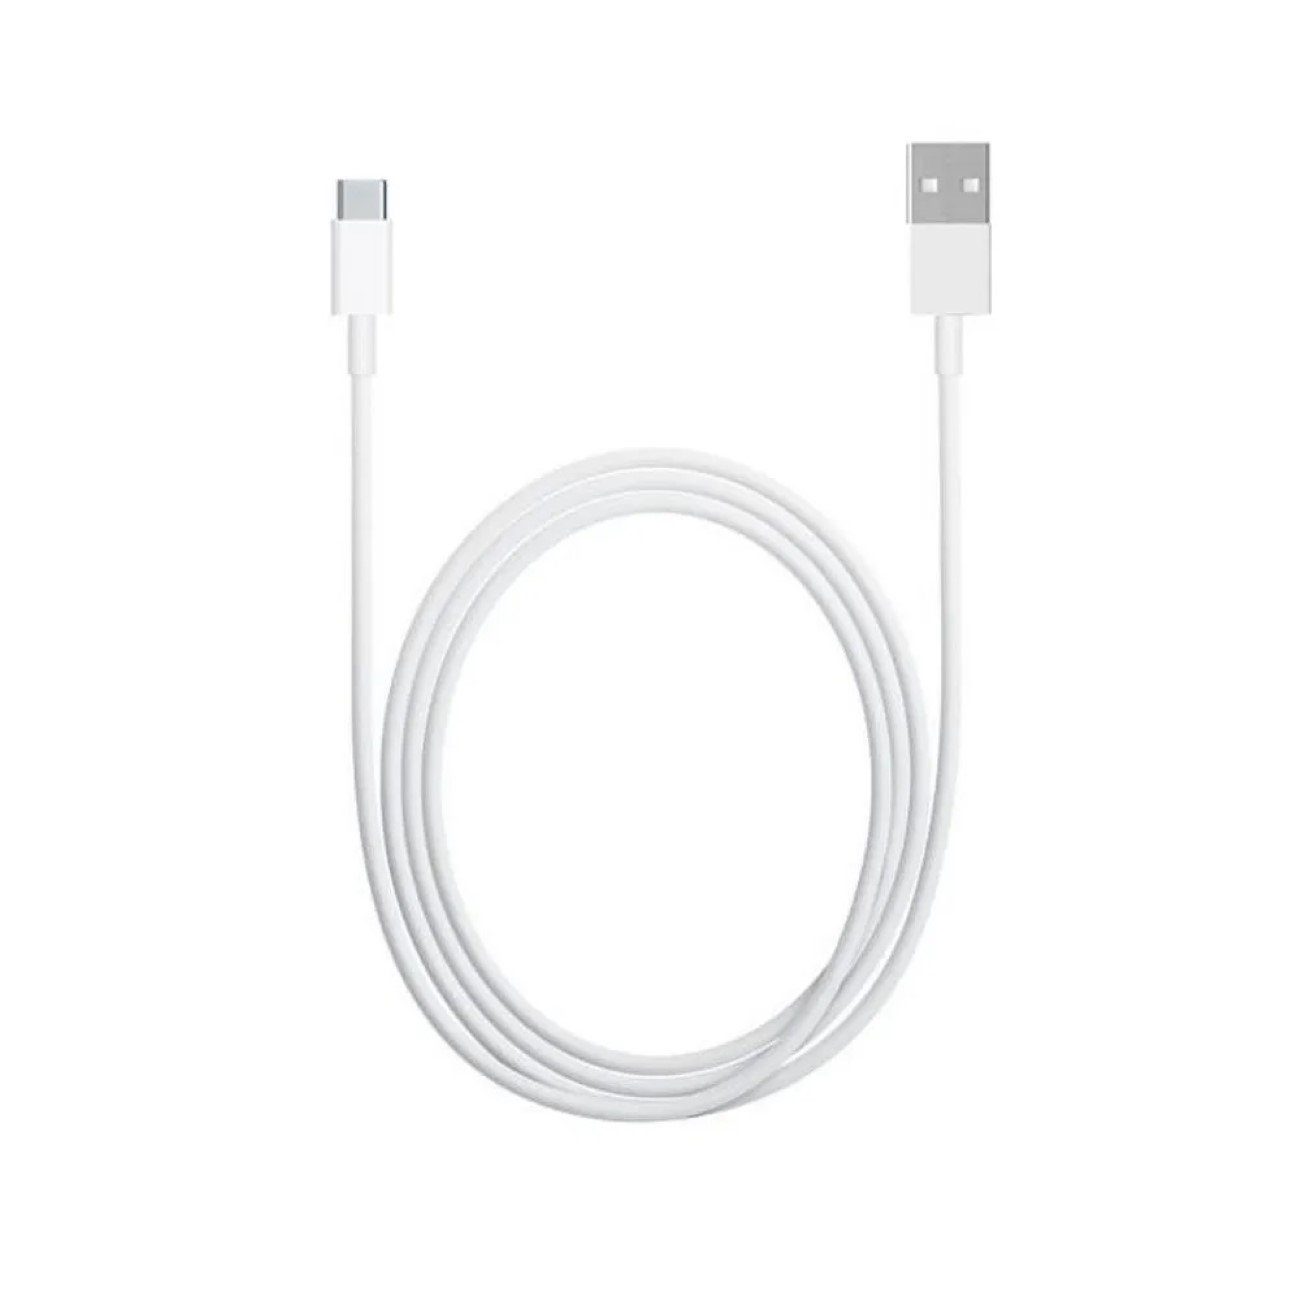 Xiaomi USB-KABEL - Xiaomi Ladekabel / Datenkabel USB-C Kabel 1m Weiß Smartphone-Kabel